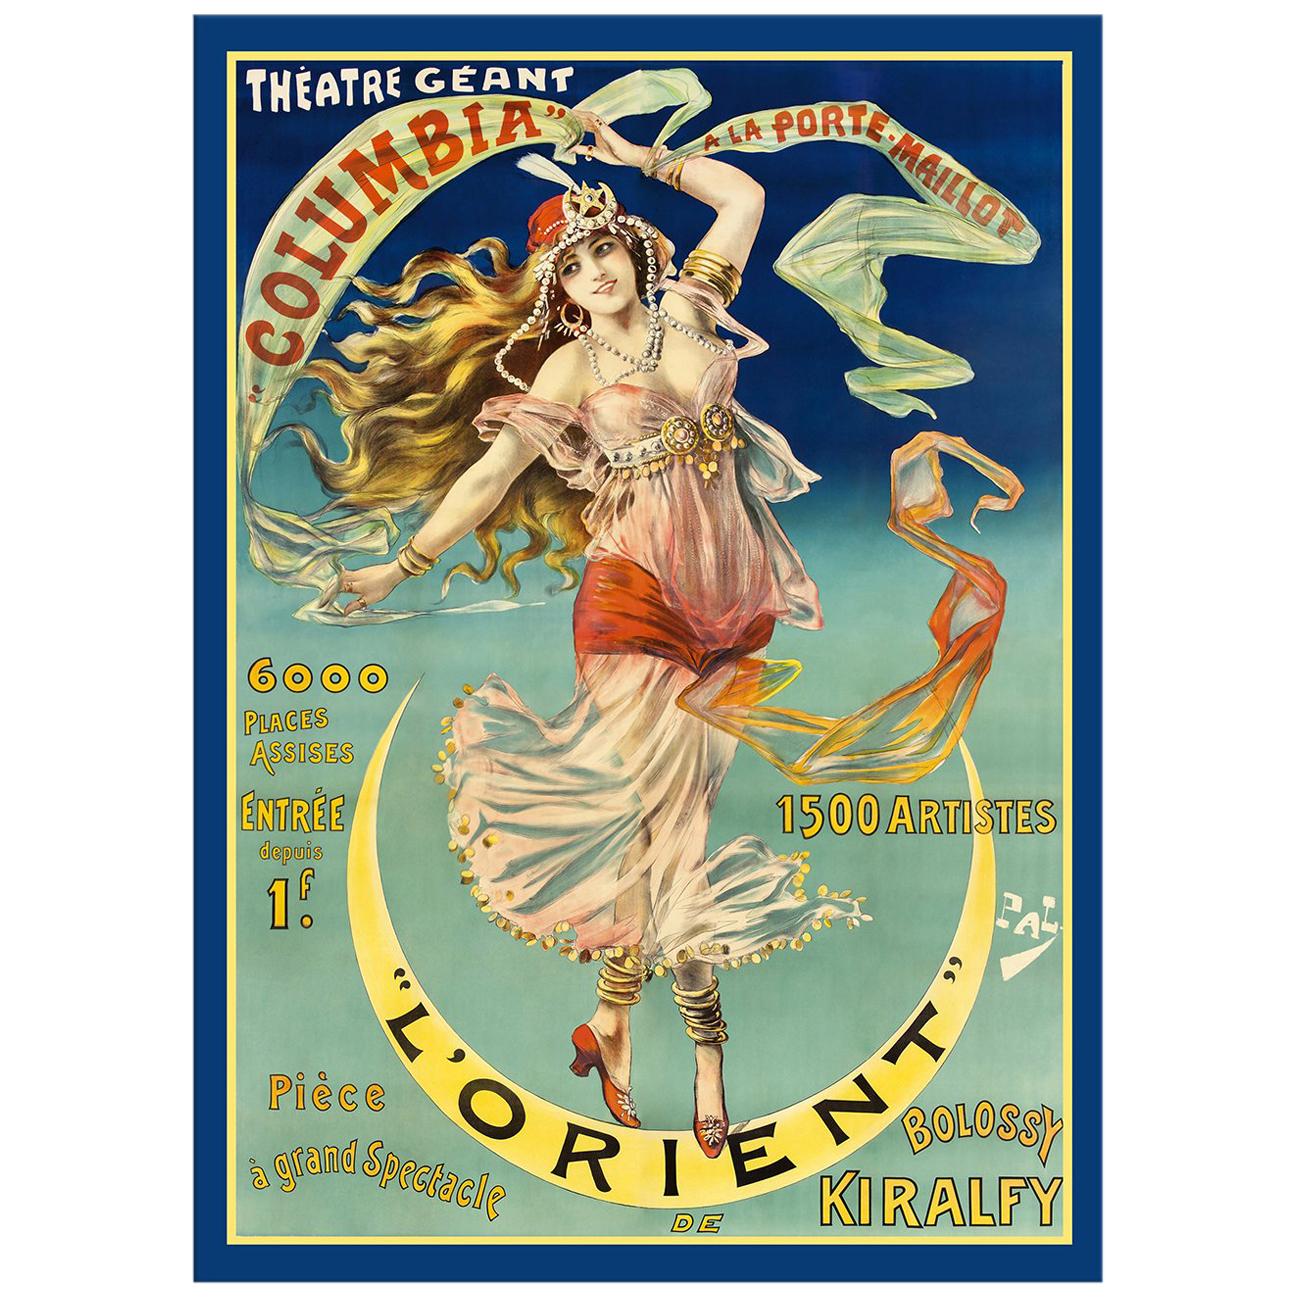 Theater Geant Poster, after Art Nouveau Vintage Poster, Belle Époque Era For Sale